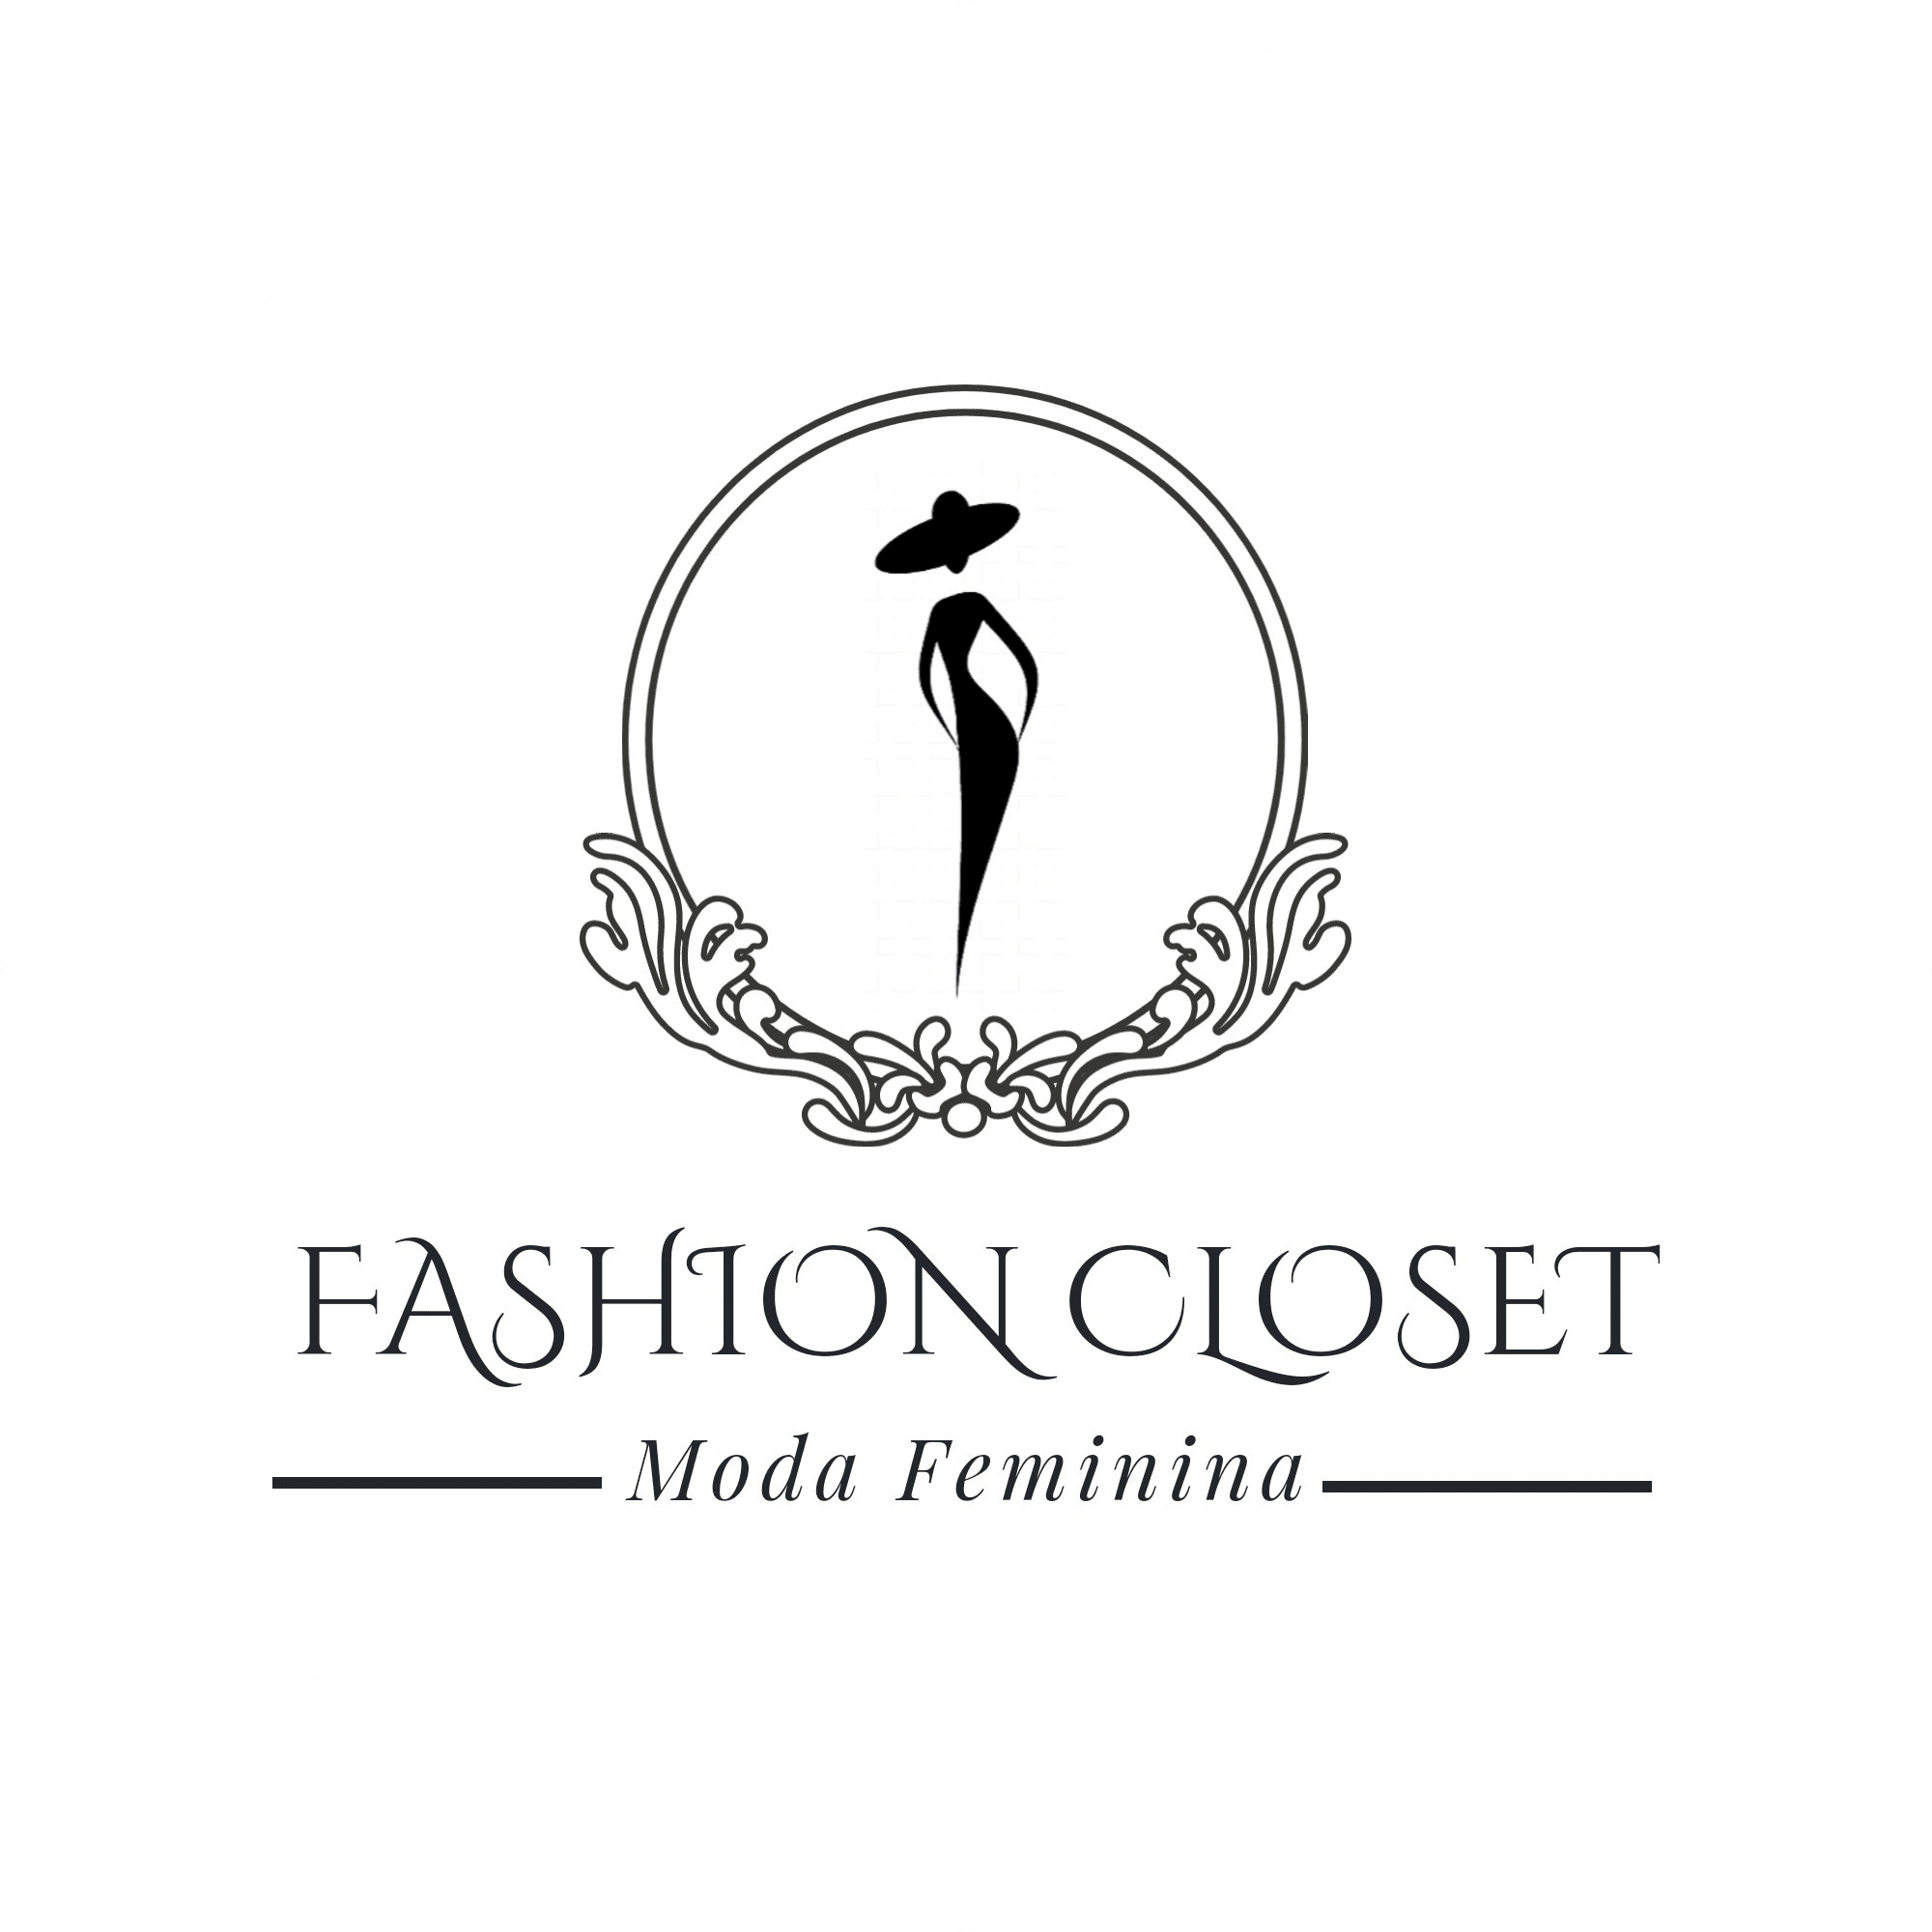 Fashion Closet